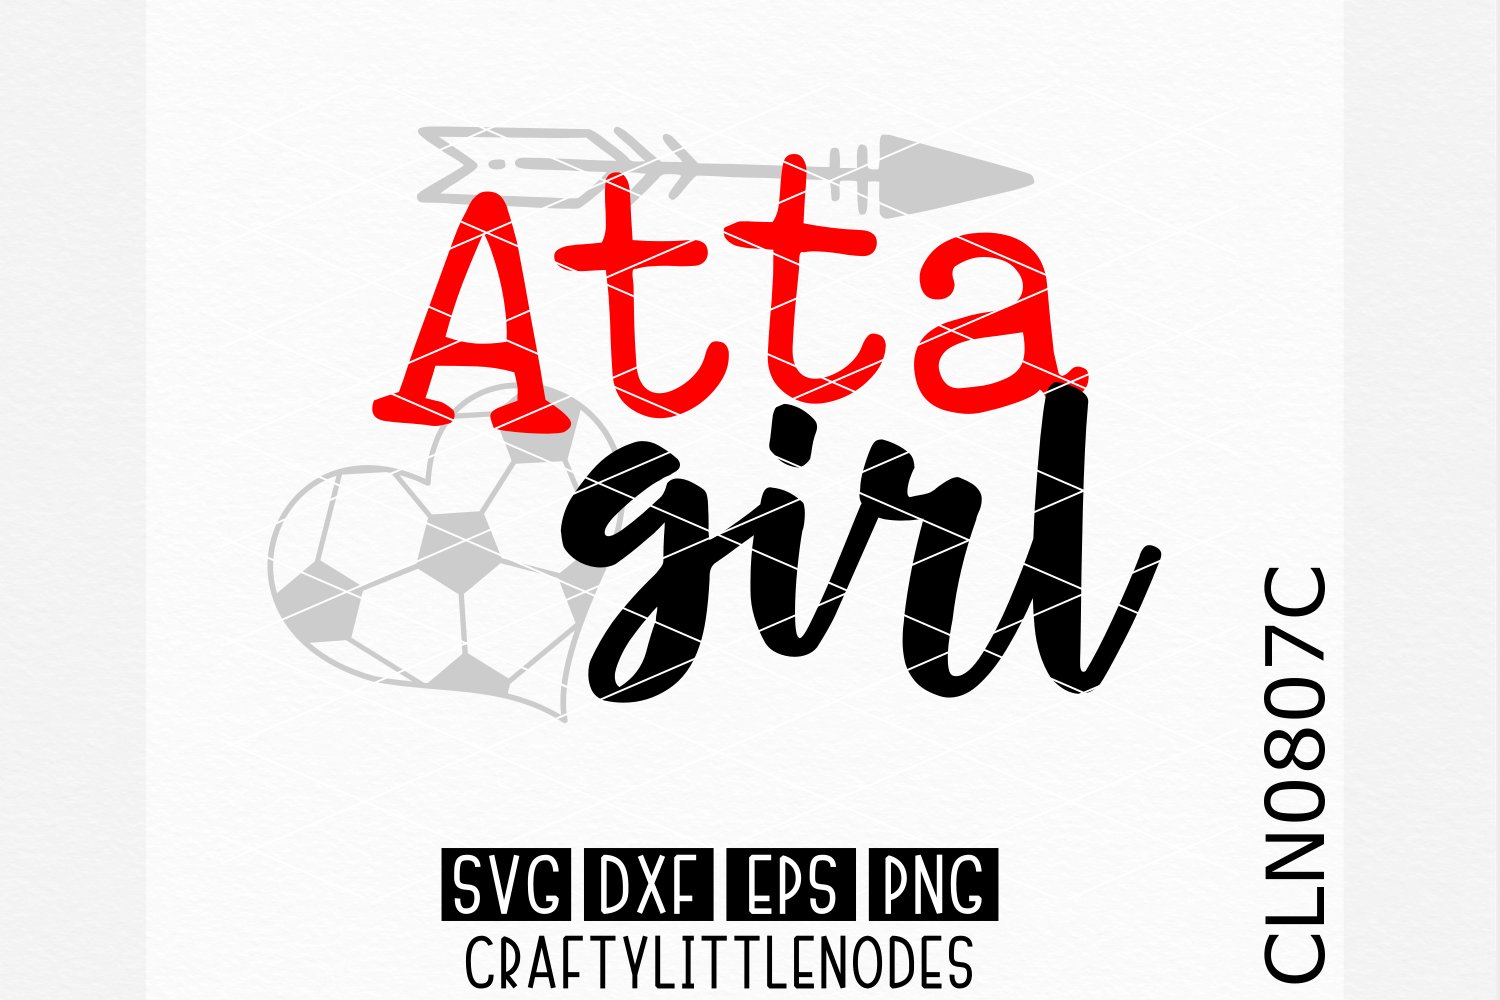 Attagirl Soccer cover image.